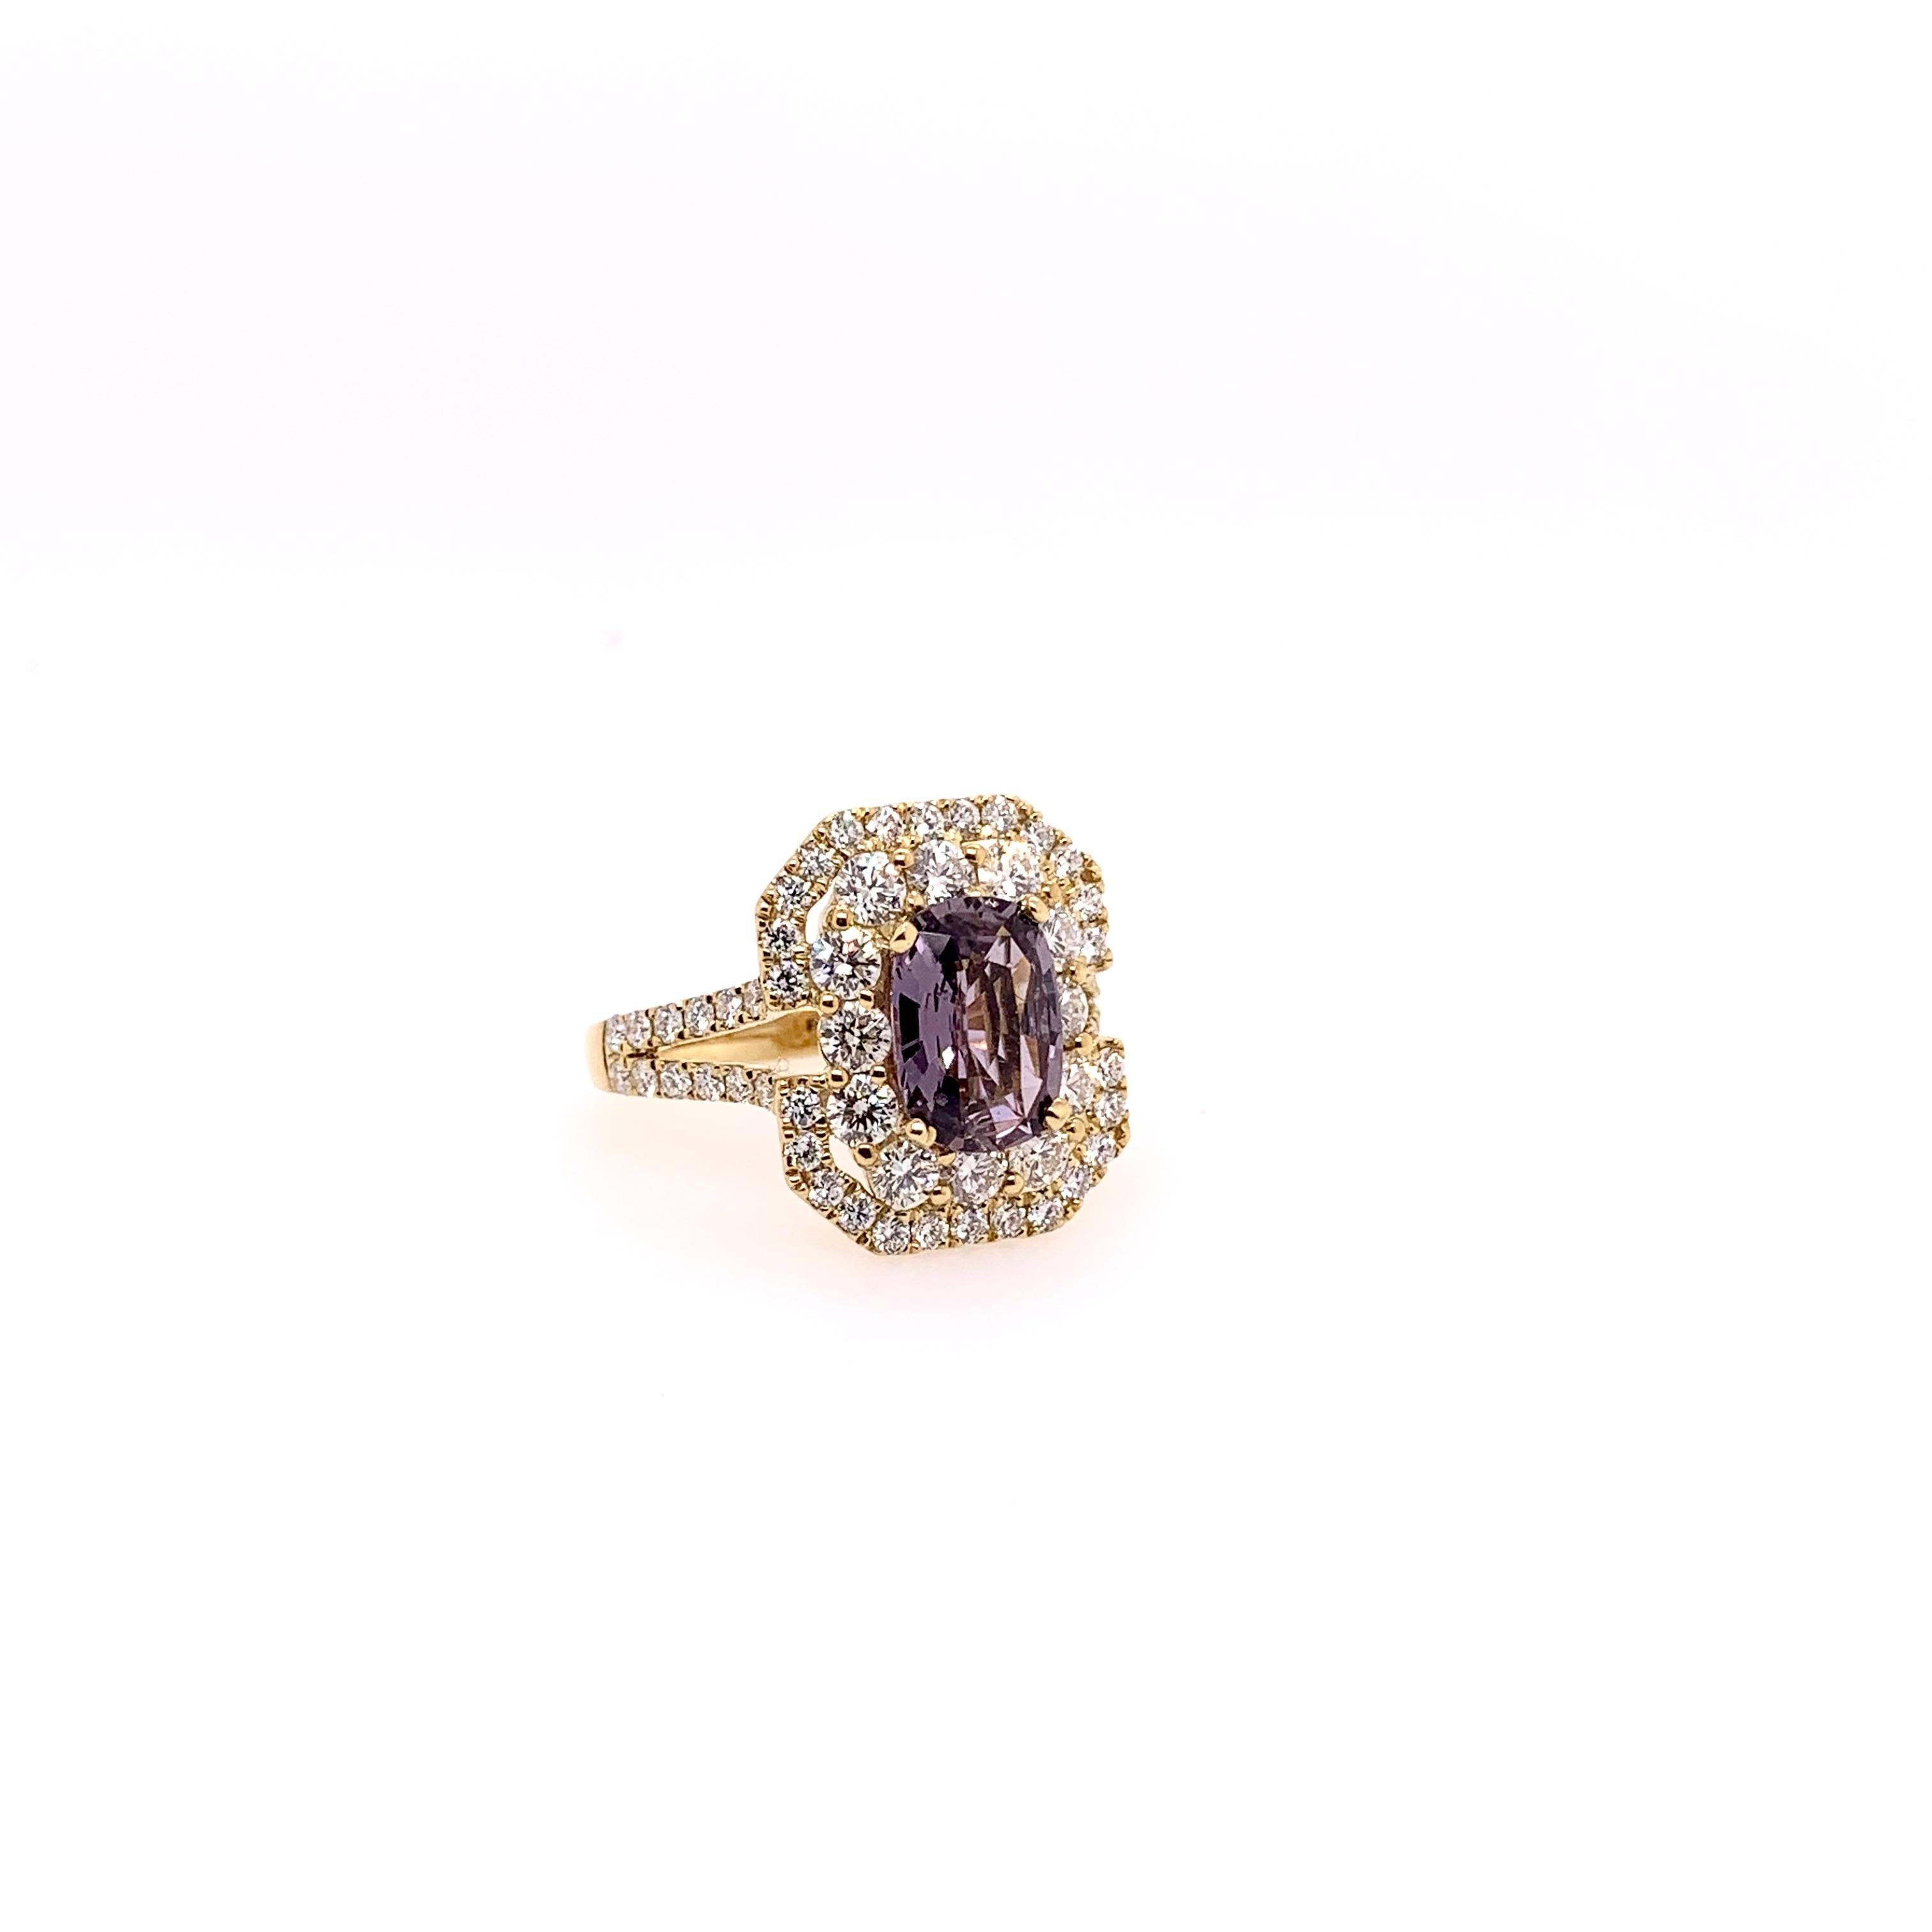 Cette bague unique possède une pierre centrale très inhabituelle.  Il s'agit d'un saphir violet naturel non chauffé, certifié par le GIA, qui pèse 2,06 carats.  La douce teinte violette est complétée par les 1,58 carats de diamants ronds de taille